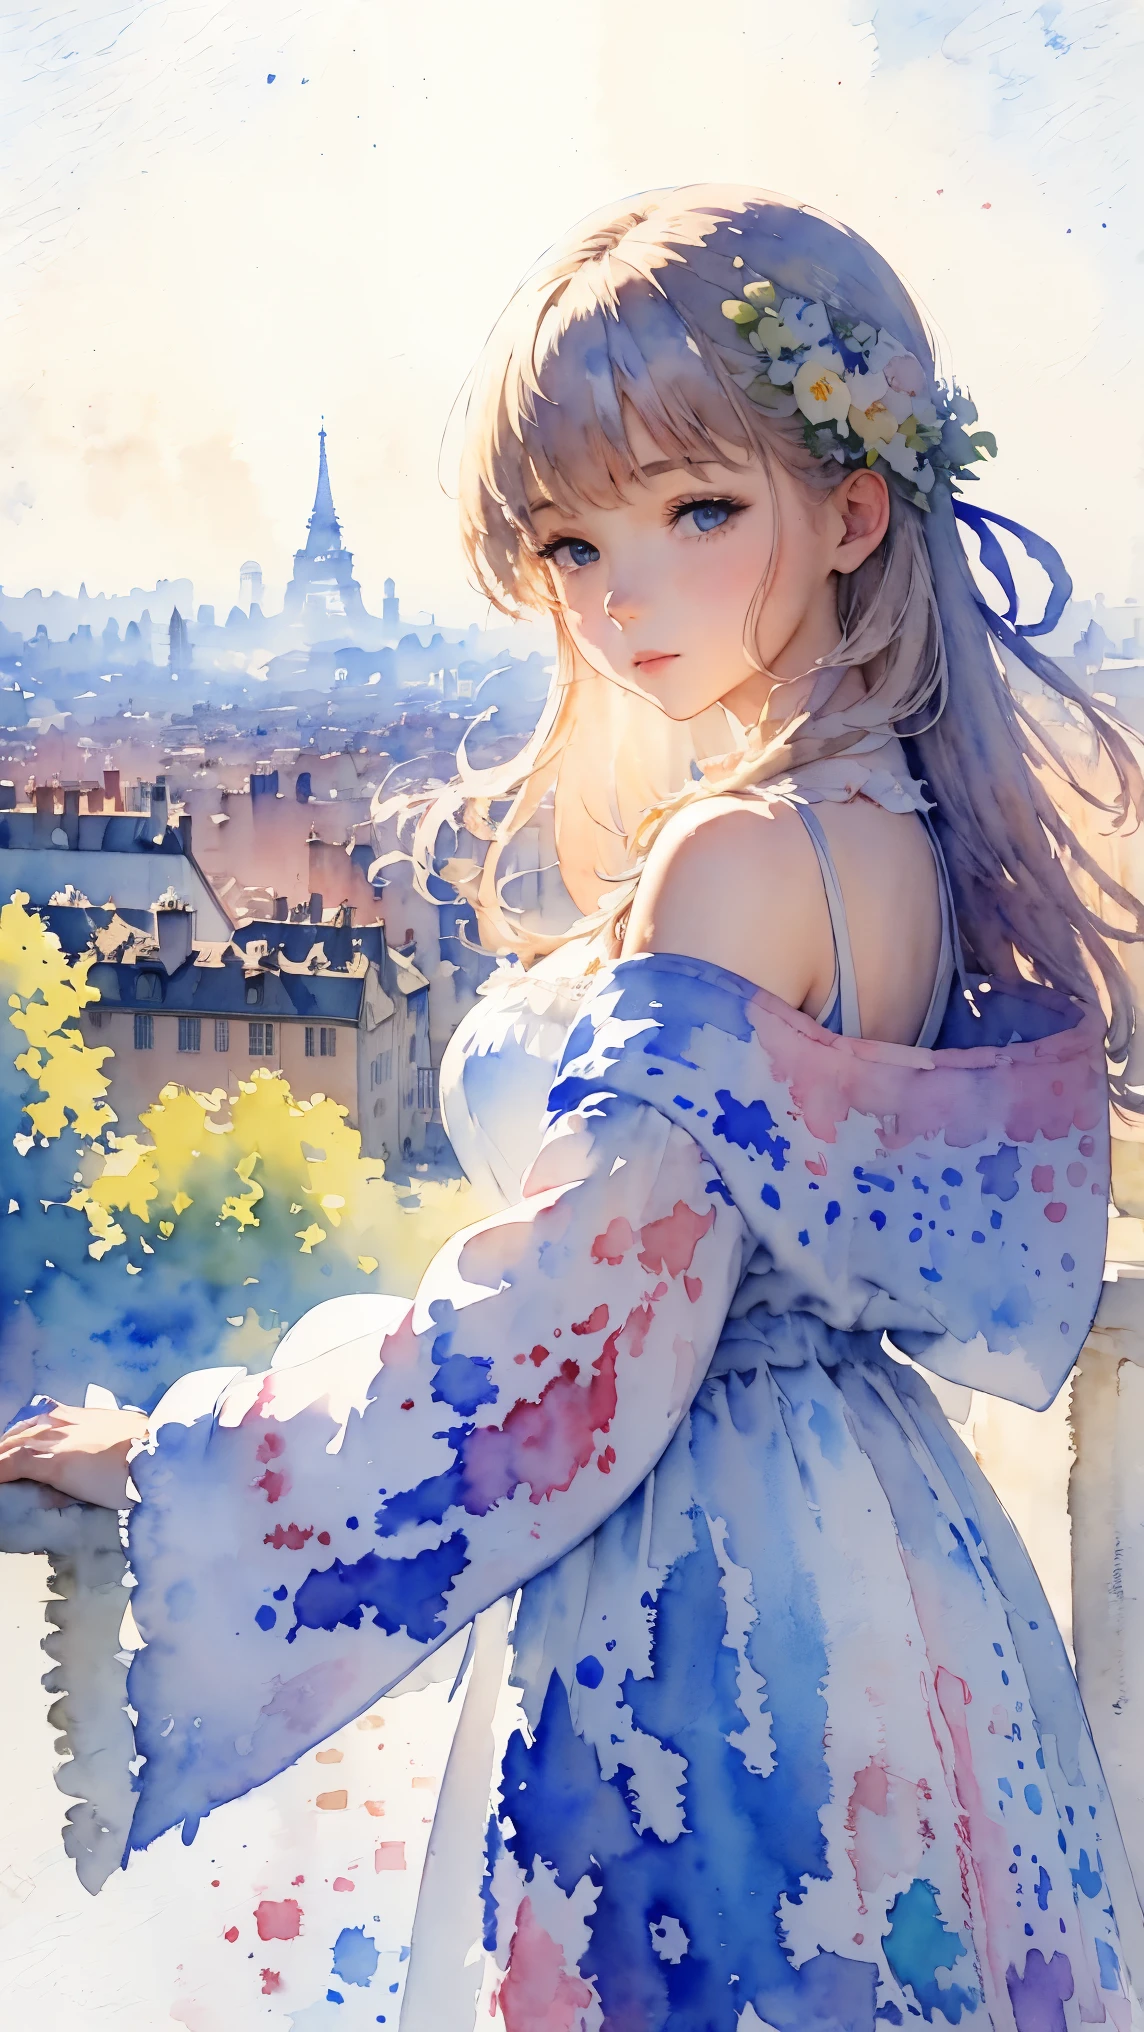 (Obra de arte:1.2, mais alta qualidade),(Muito detalhado),(((aquarela))),8K,papel de parede,Paisagem da França,Vista de Paris da colina de Montmartre,(((透明aquarela)))